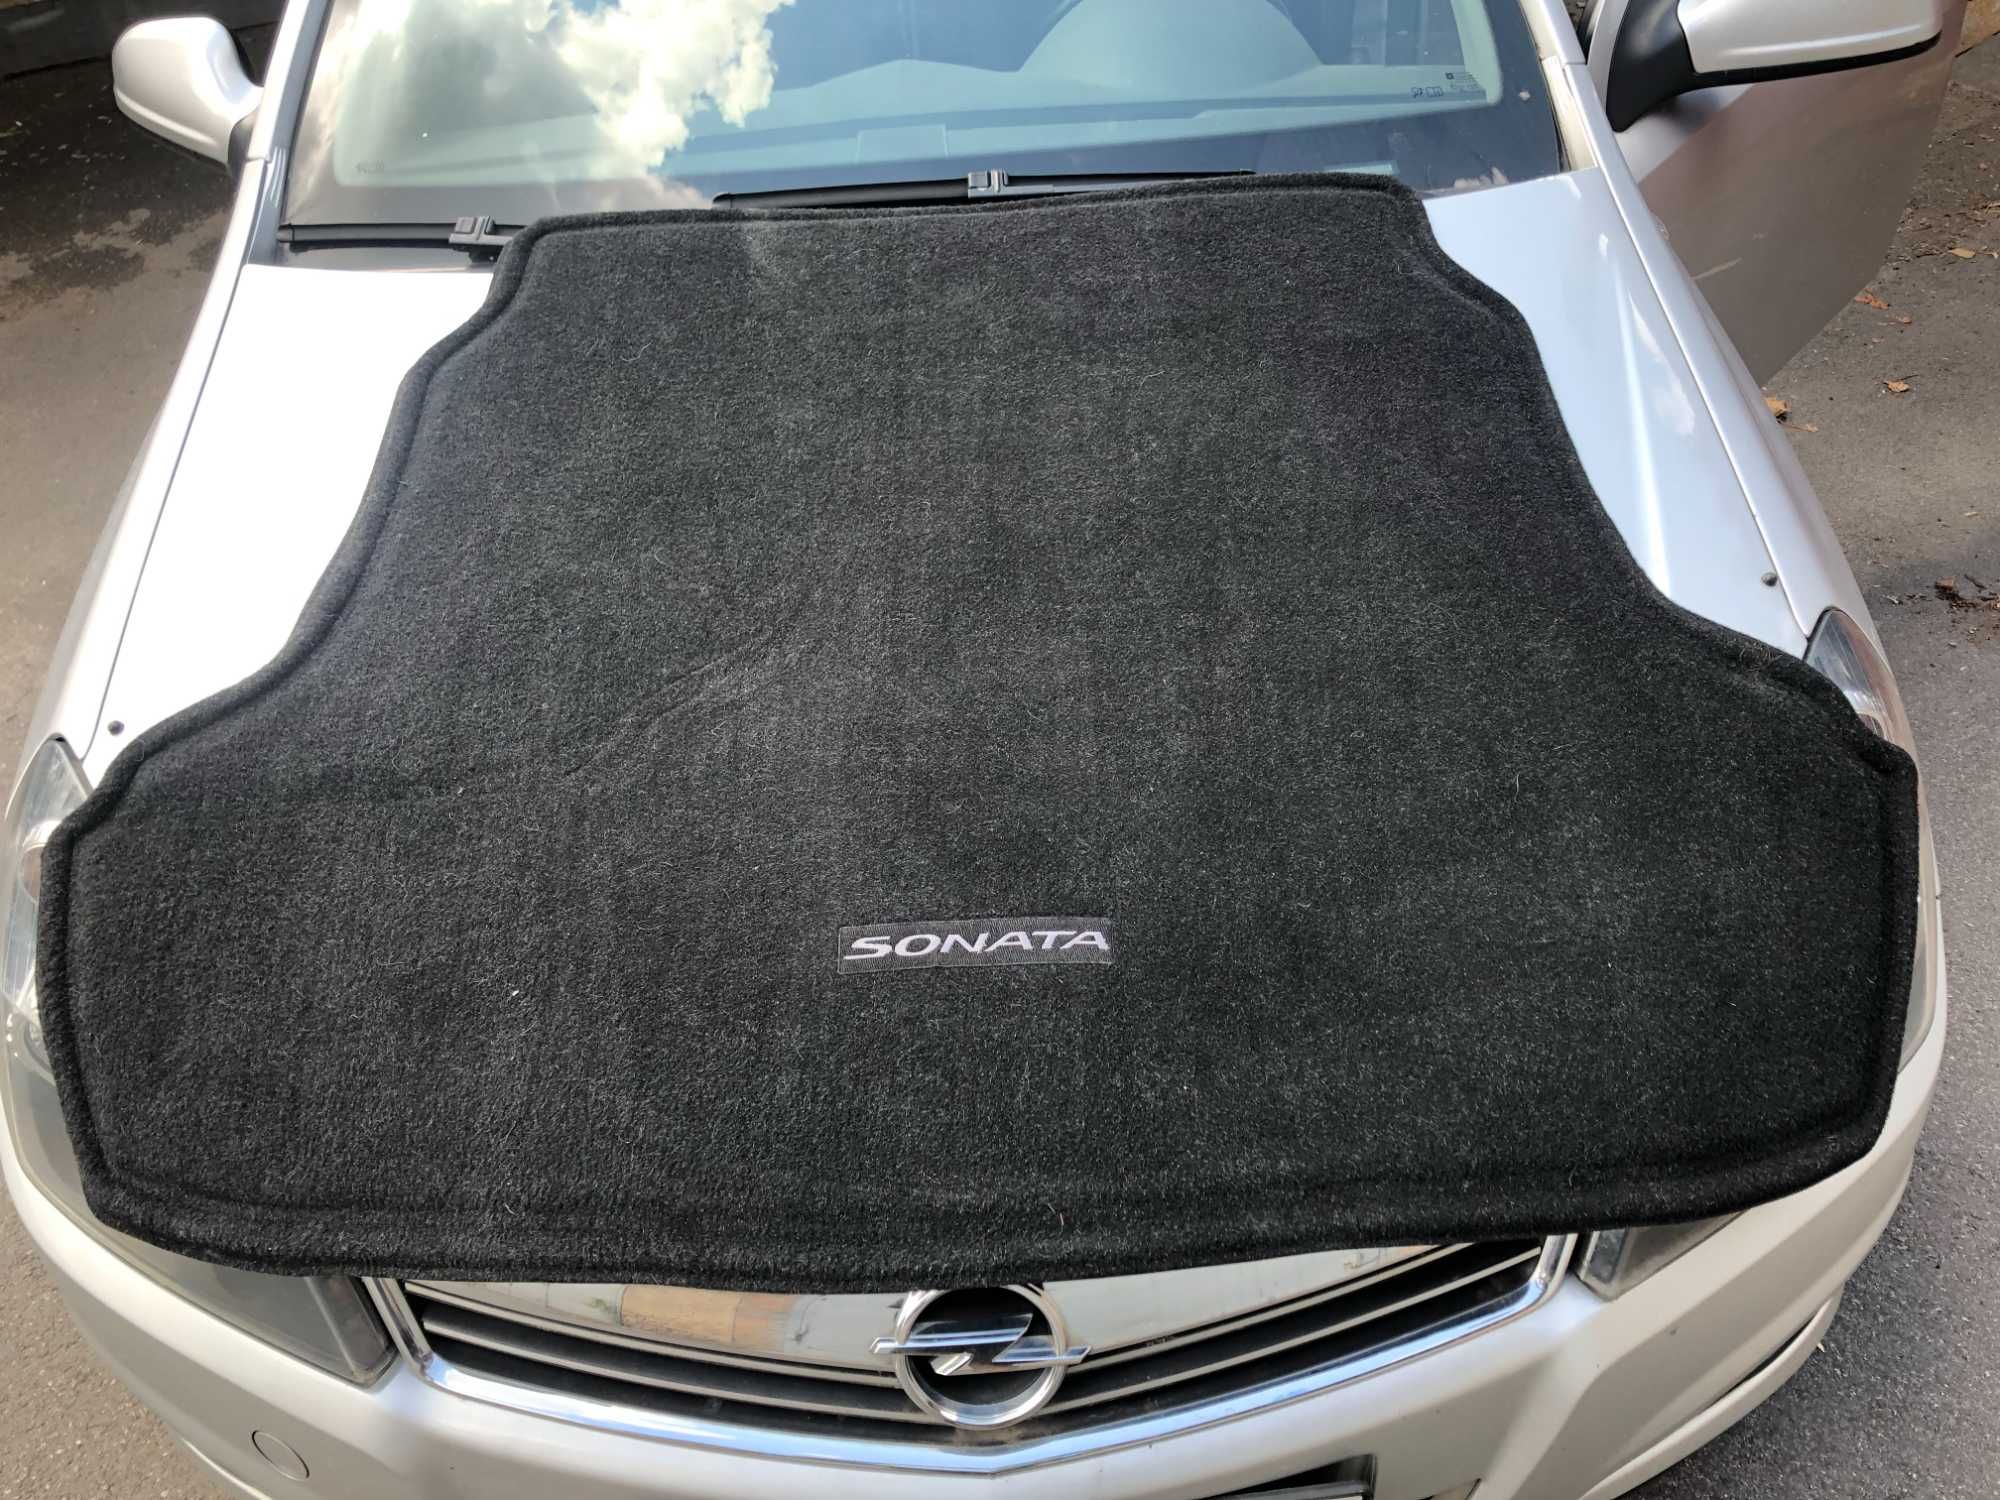 Hundai Sonata 2018 коврик багажника